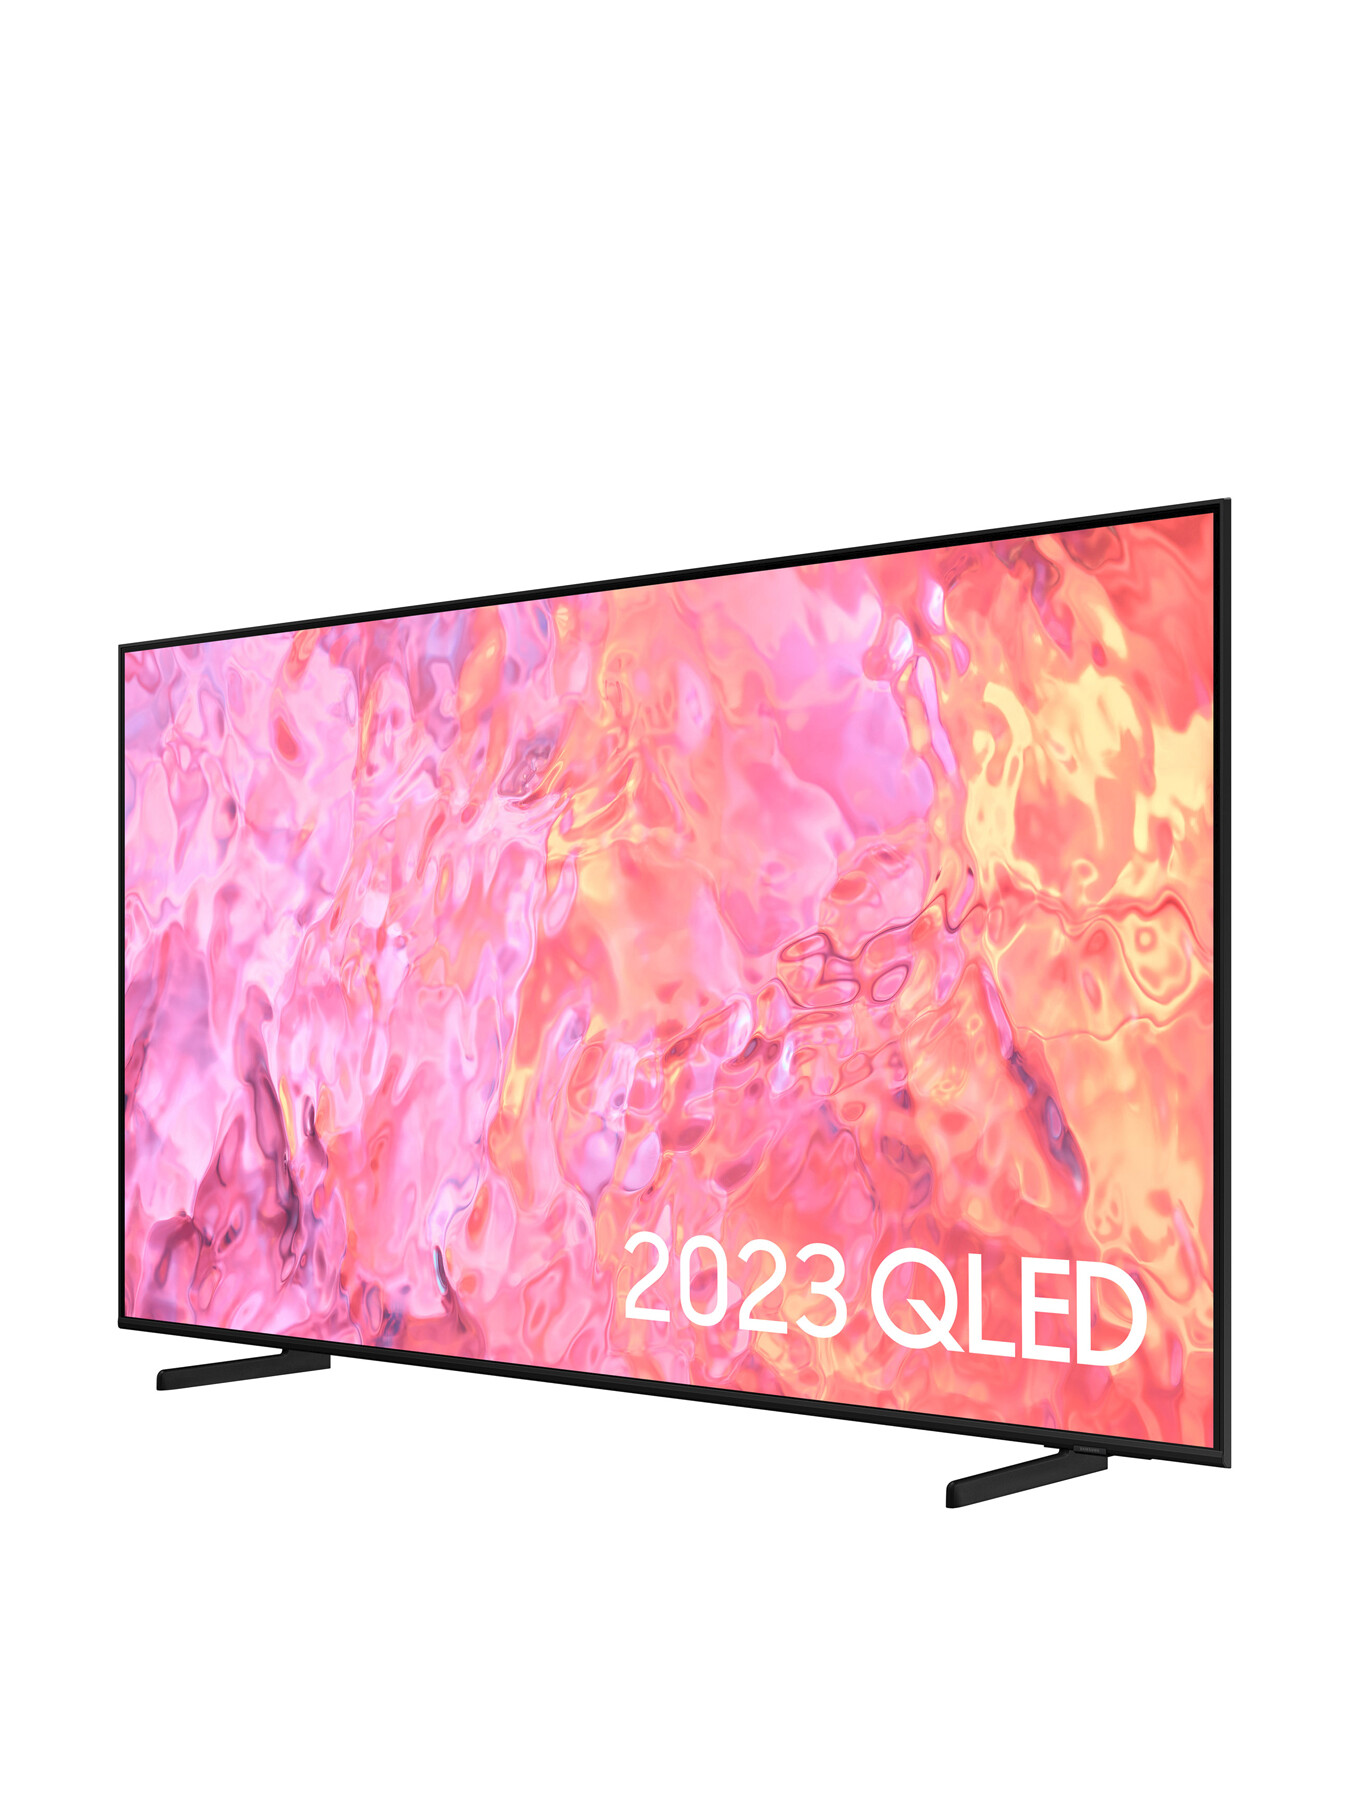 Samsung QE65Q60 QLED HDR 4k Smart TV 65 Inch (2023) | Fenwick